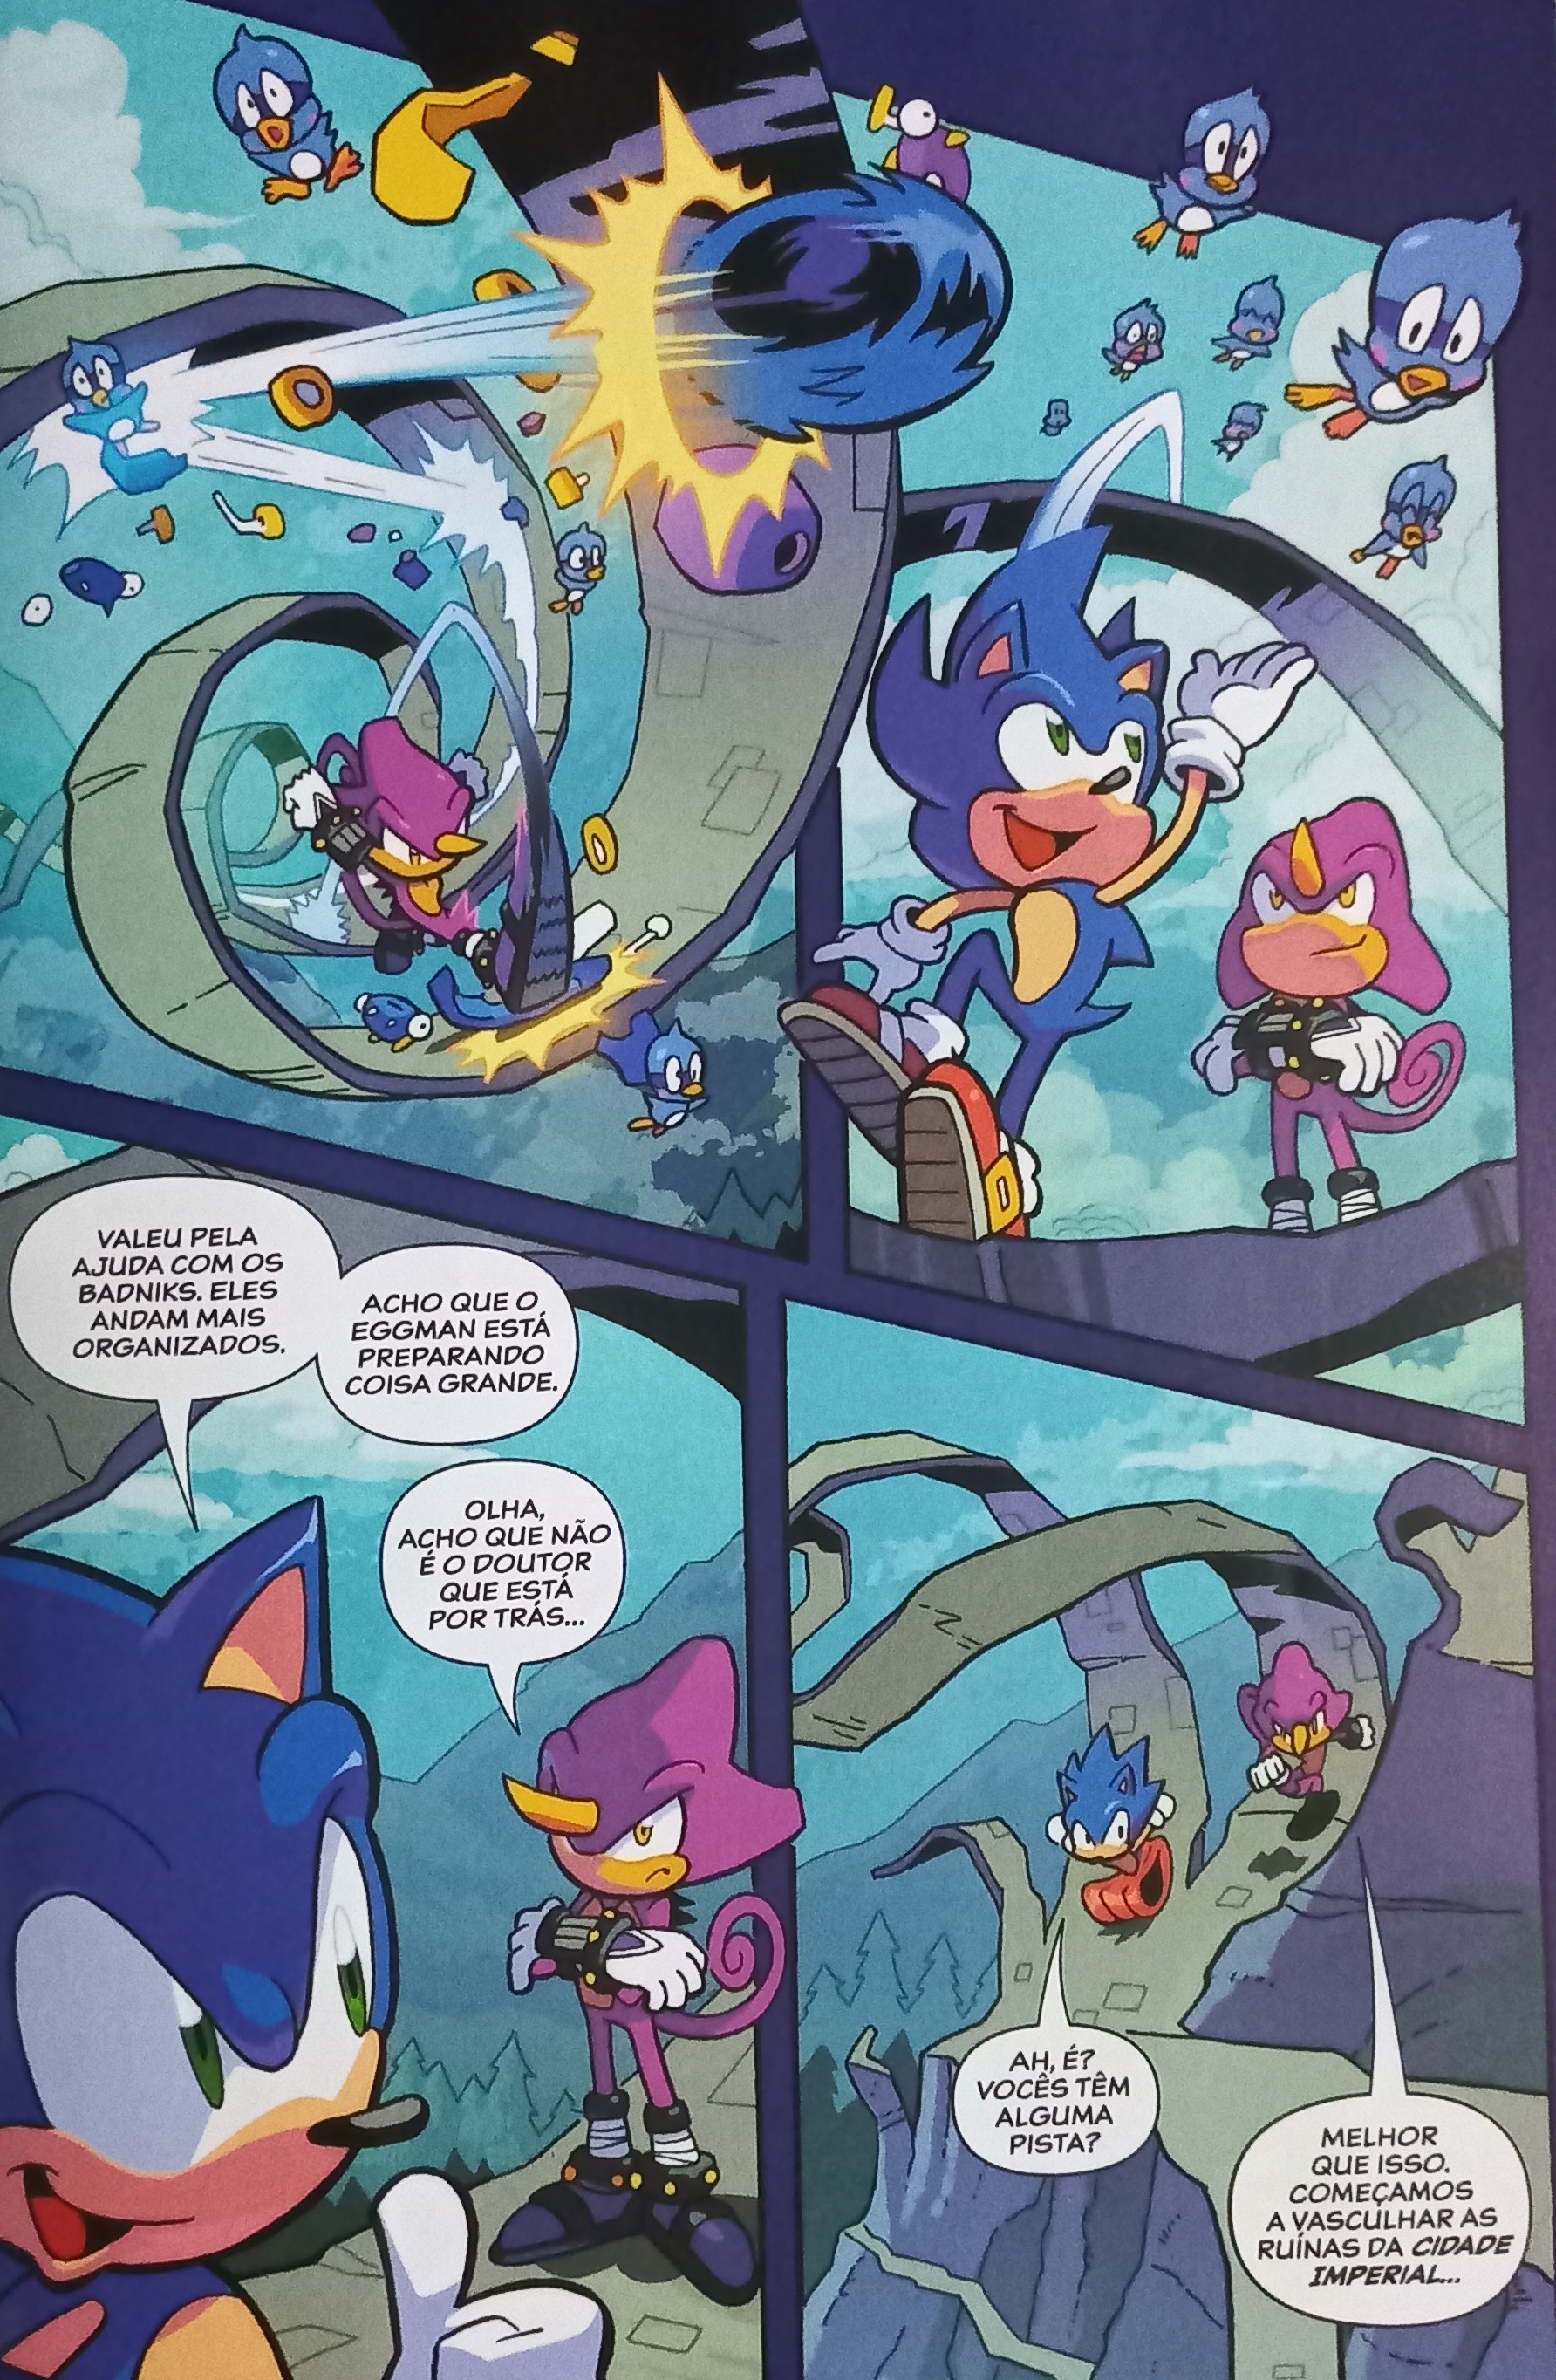 O bom e velho Sonic – Quadrinhópole